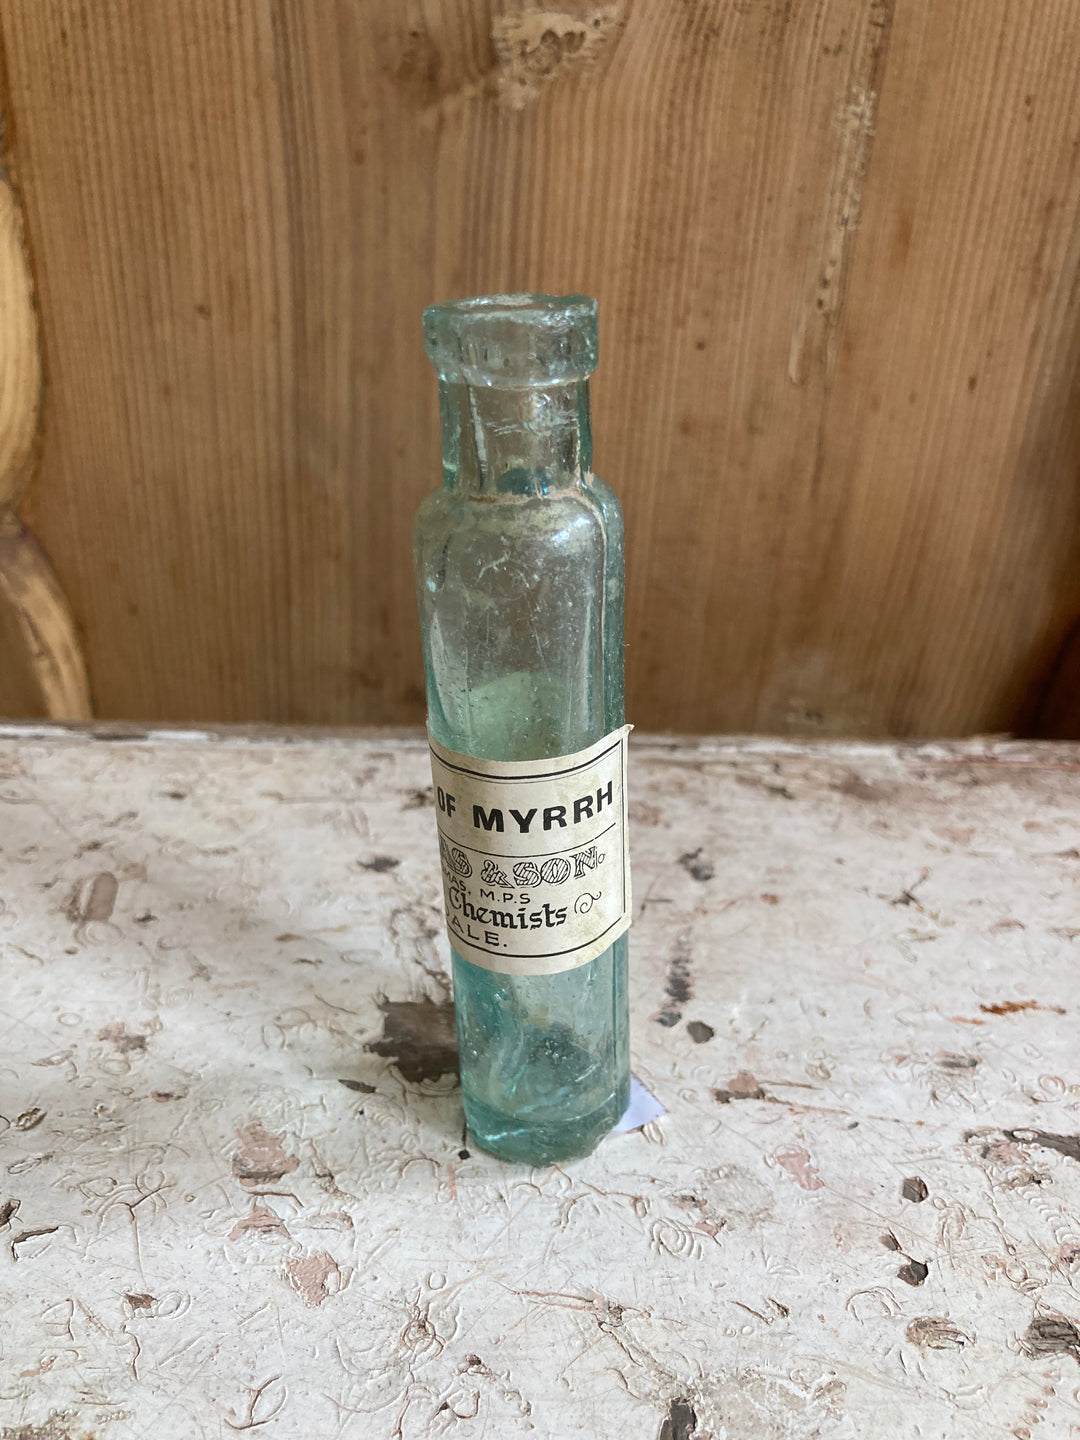 Tincture of Myrrh Apothecary bottle